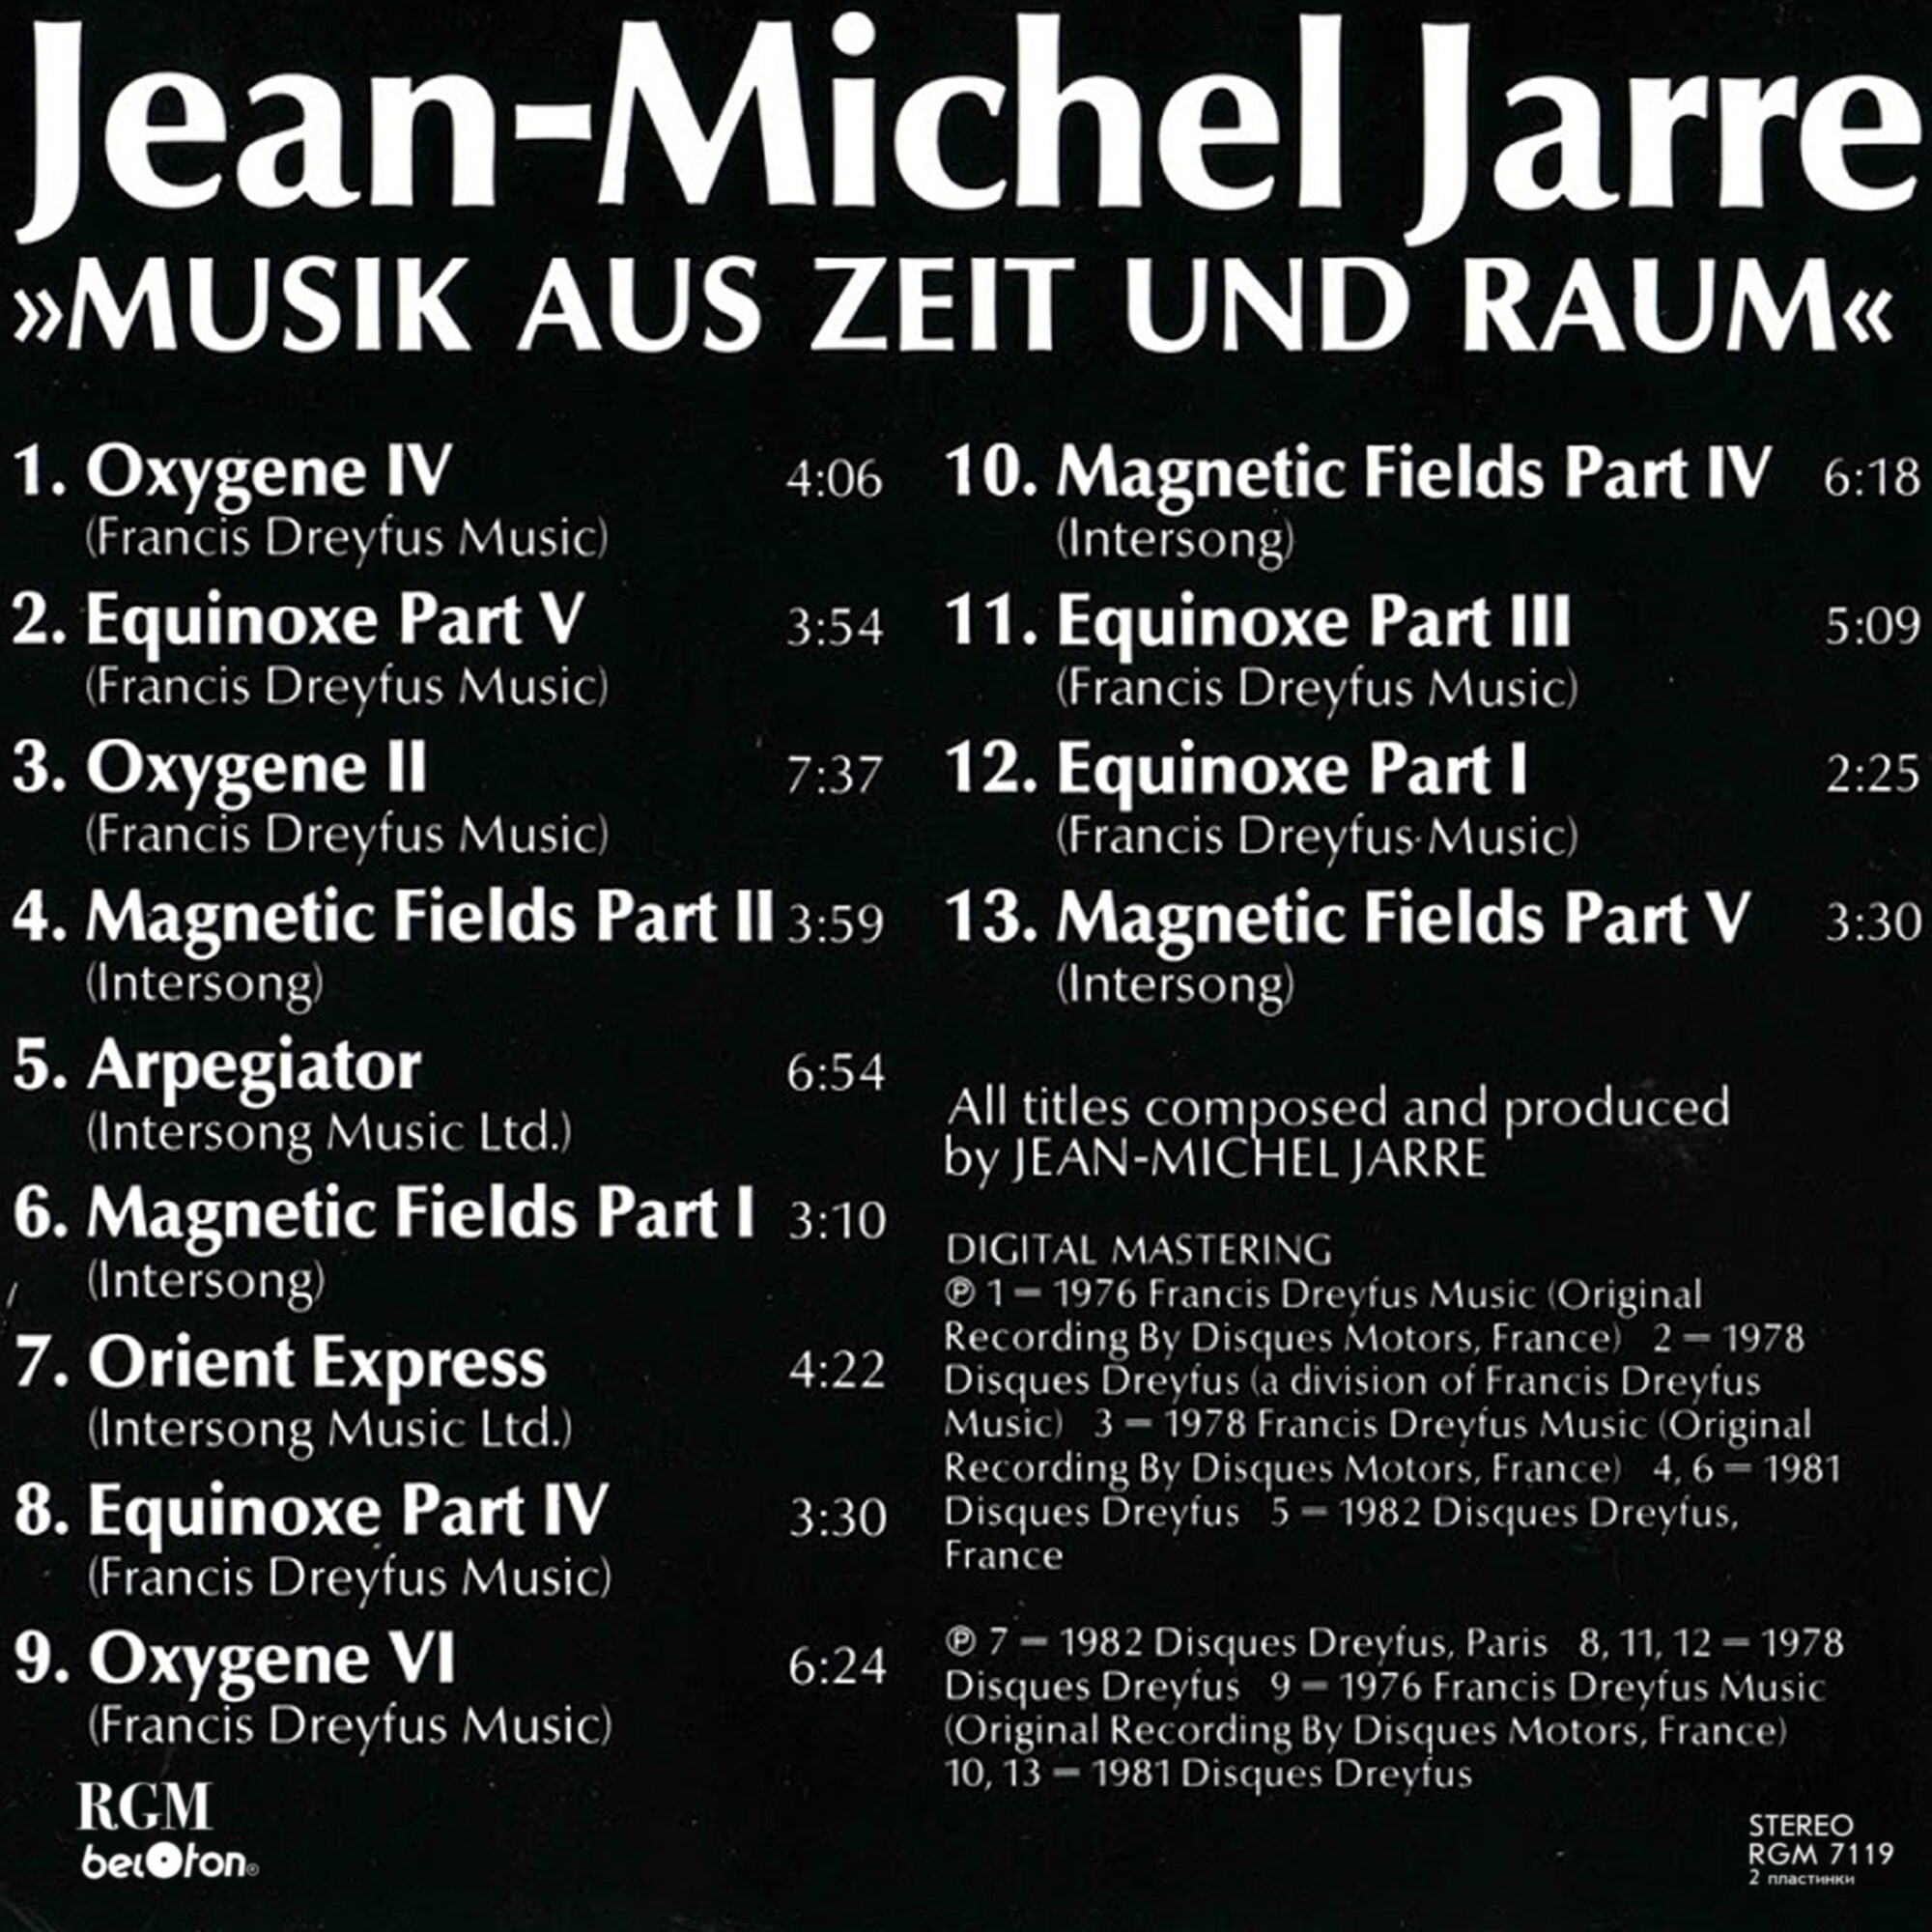 Jean-Michel JARRE. Music aus Zeit und Raum